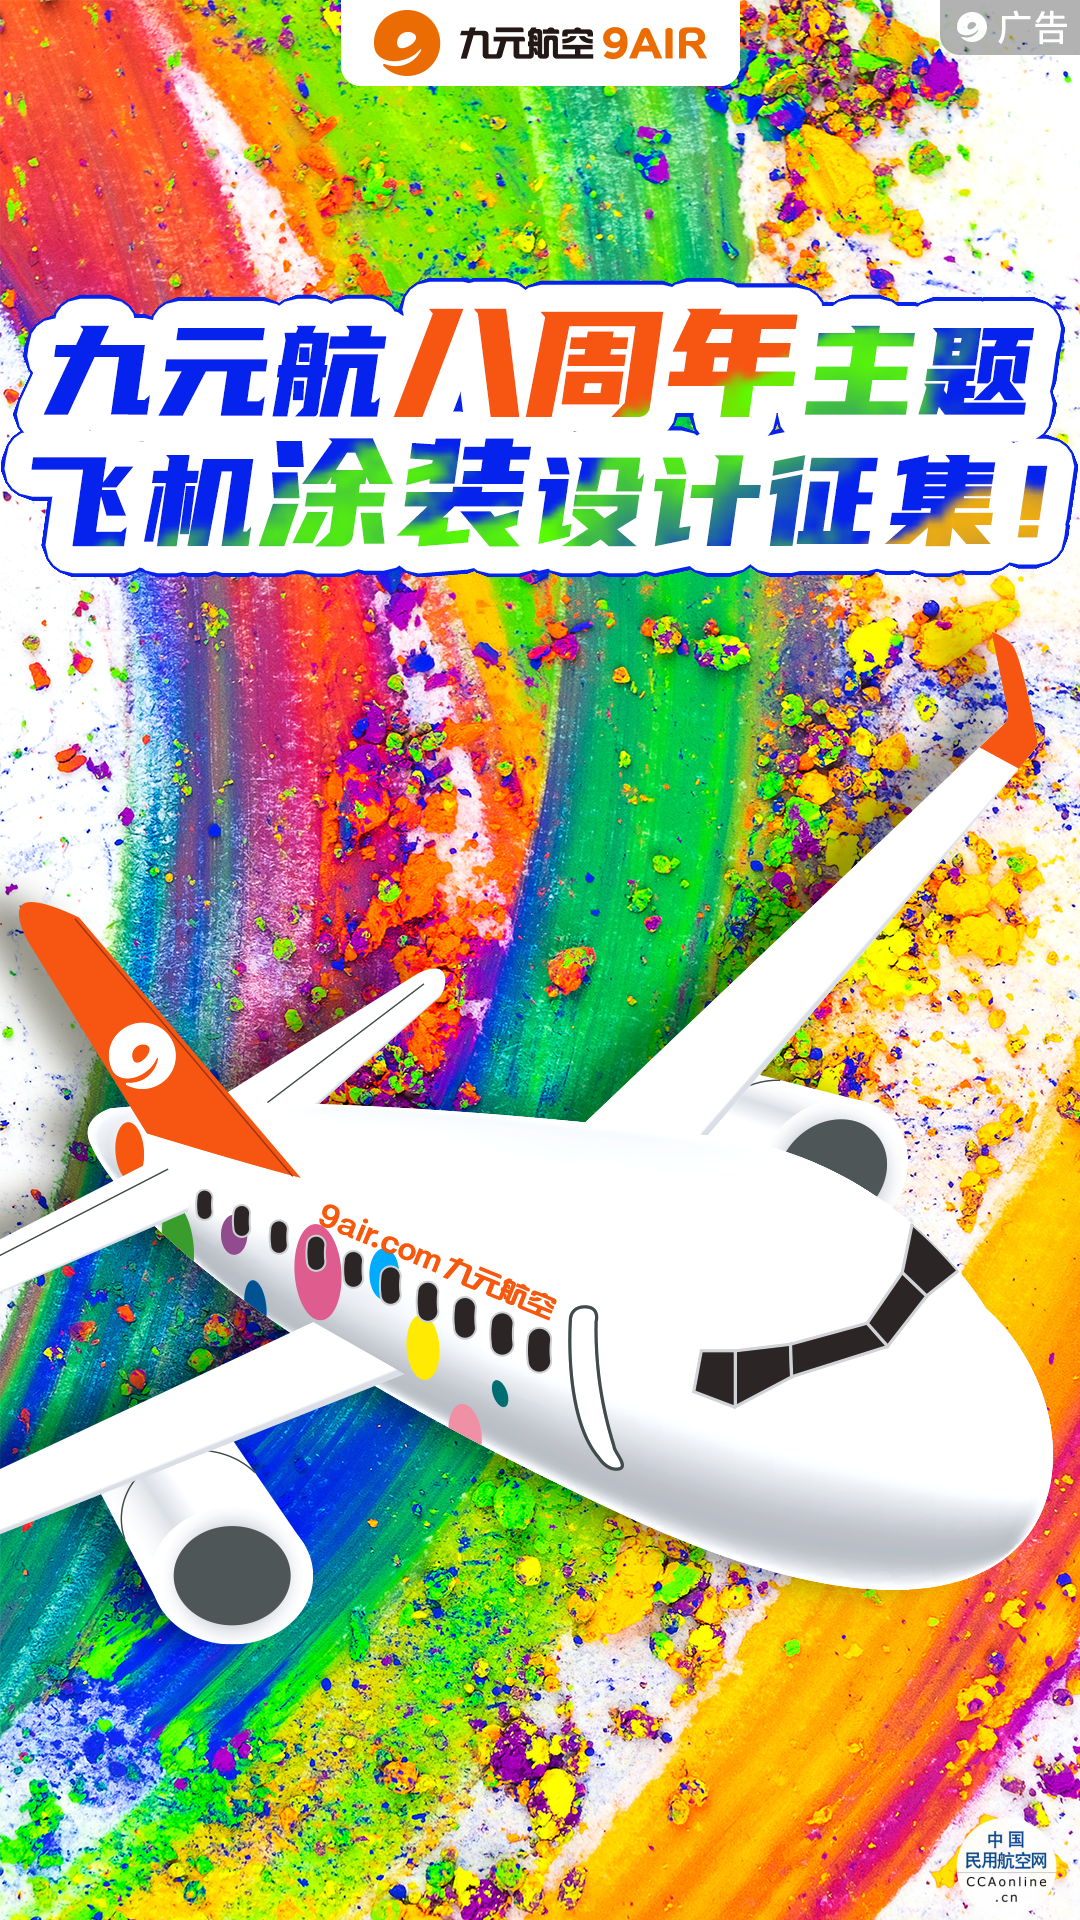 九元航空八周年主题飞机涂装设计征集